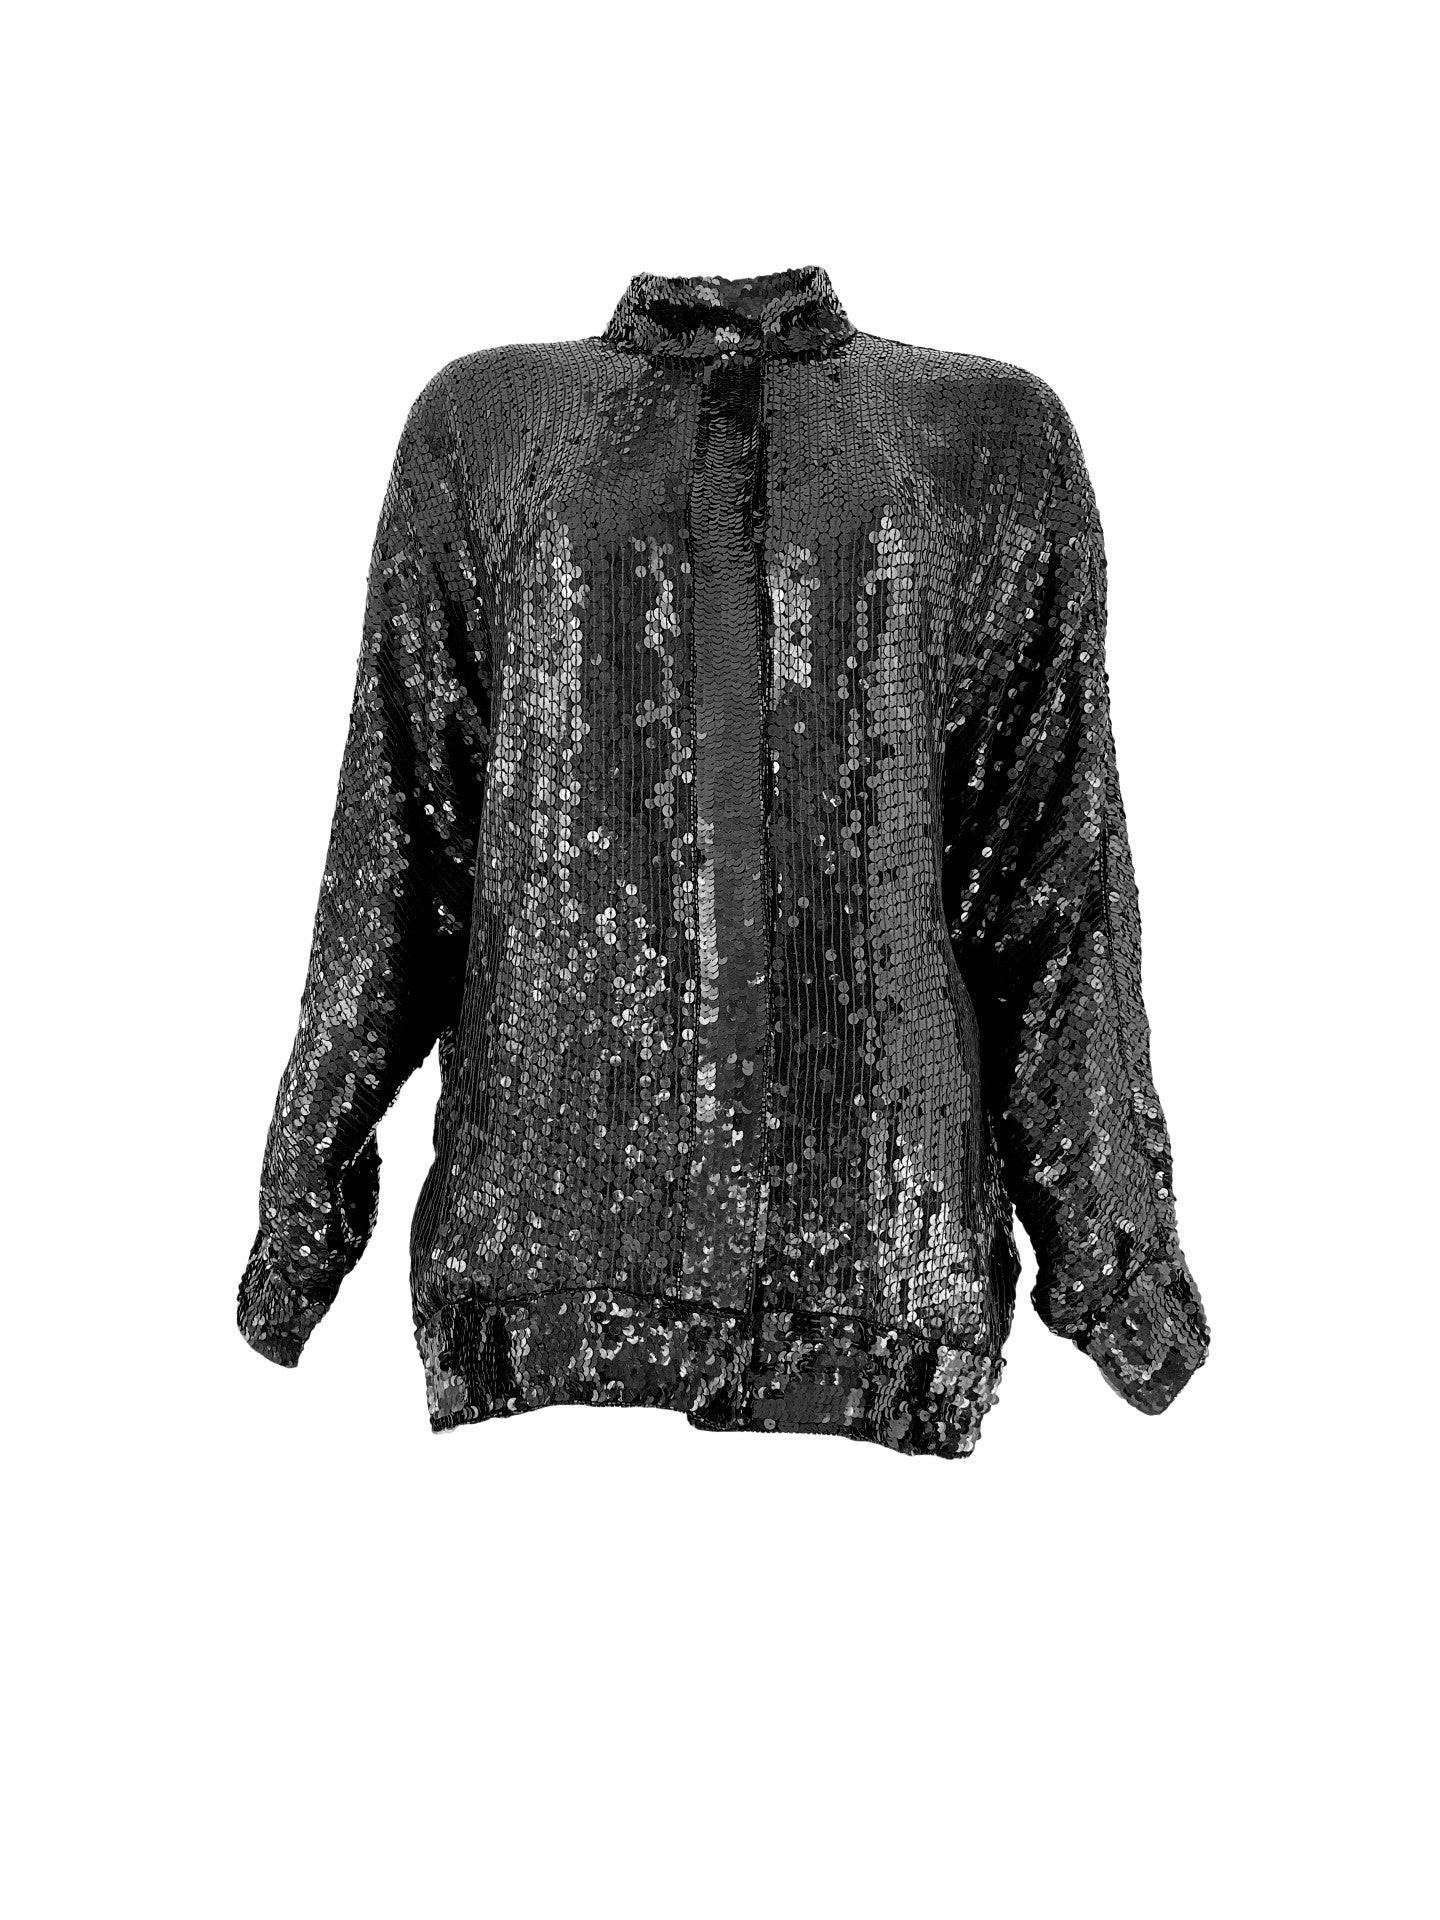 Women's 1980s Black Sequin Bomber Shacket Dolman Sleeve Fully Beaded Silk Moto Jacket For Sale